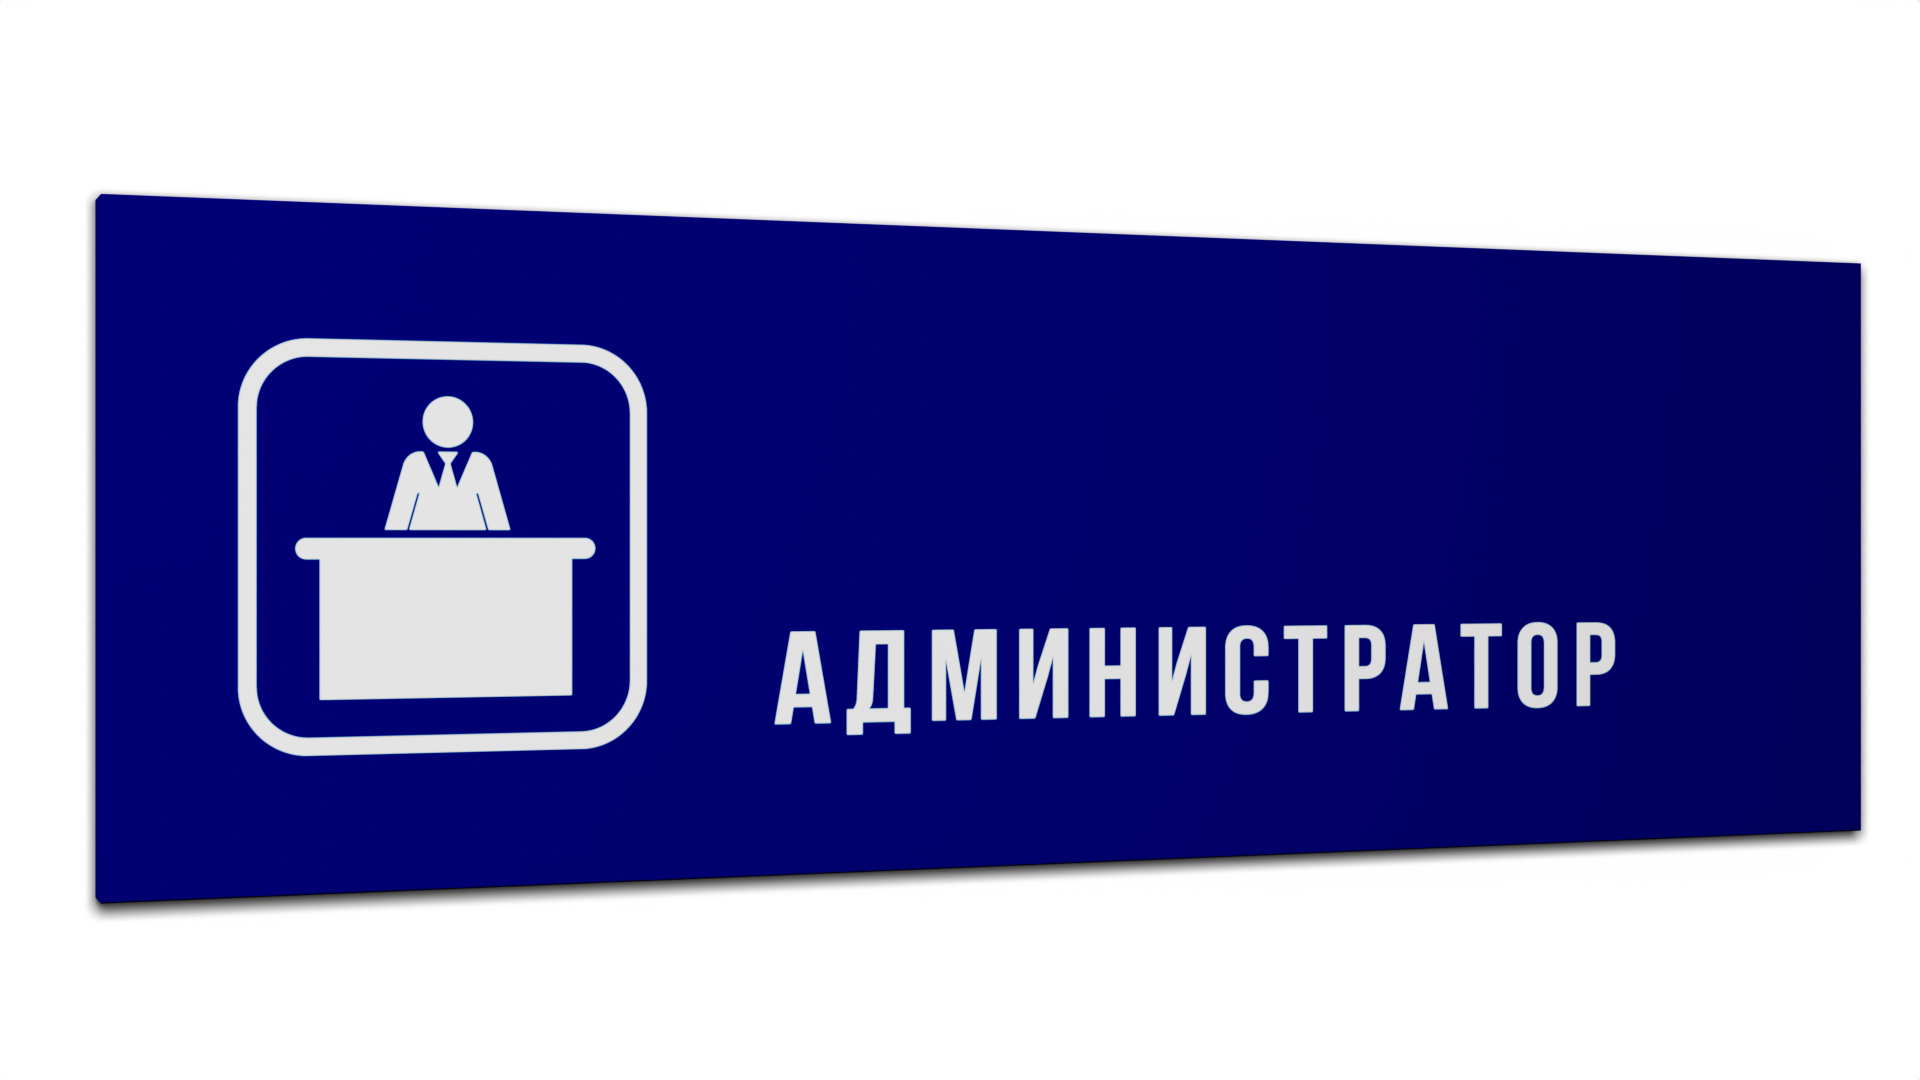 Табличка Администратор, Синяя матовая, 30 см х 10 см